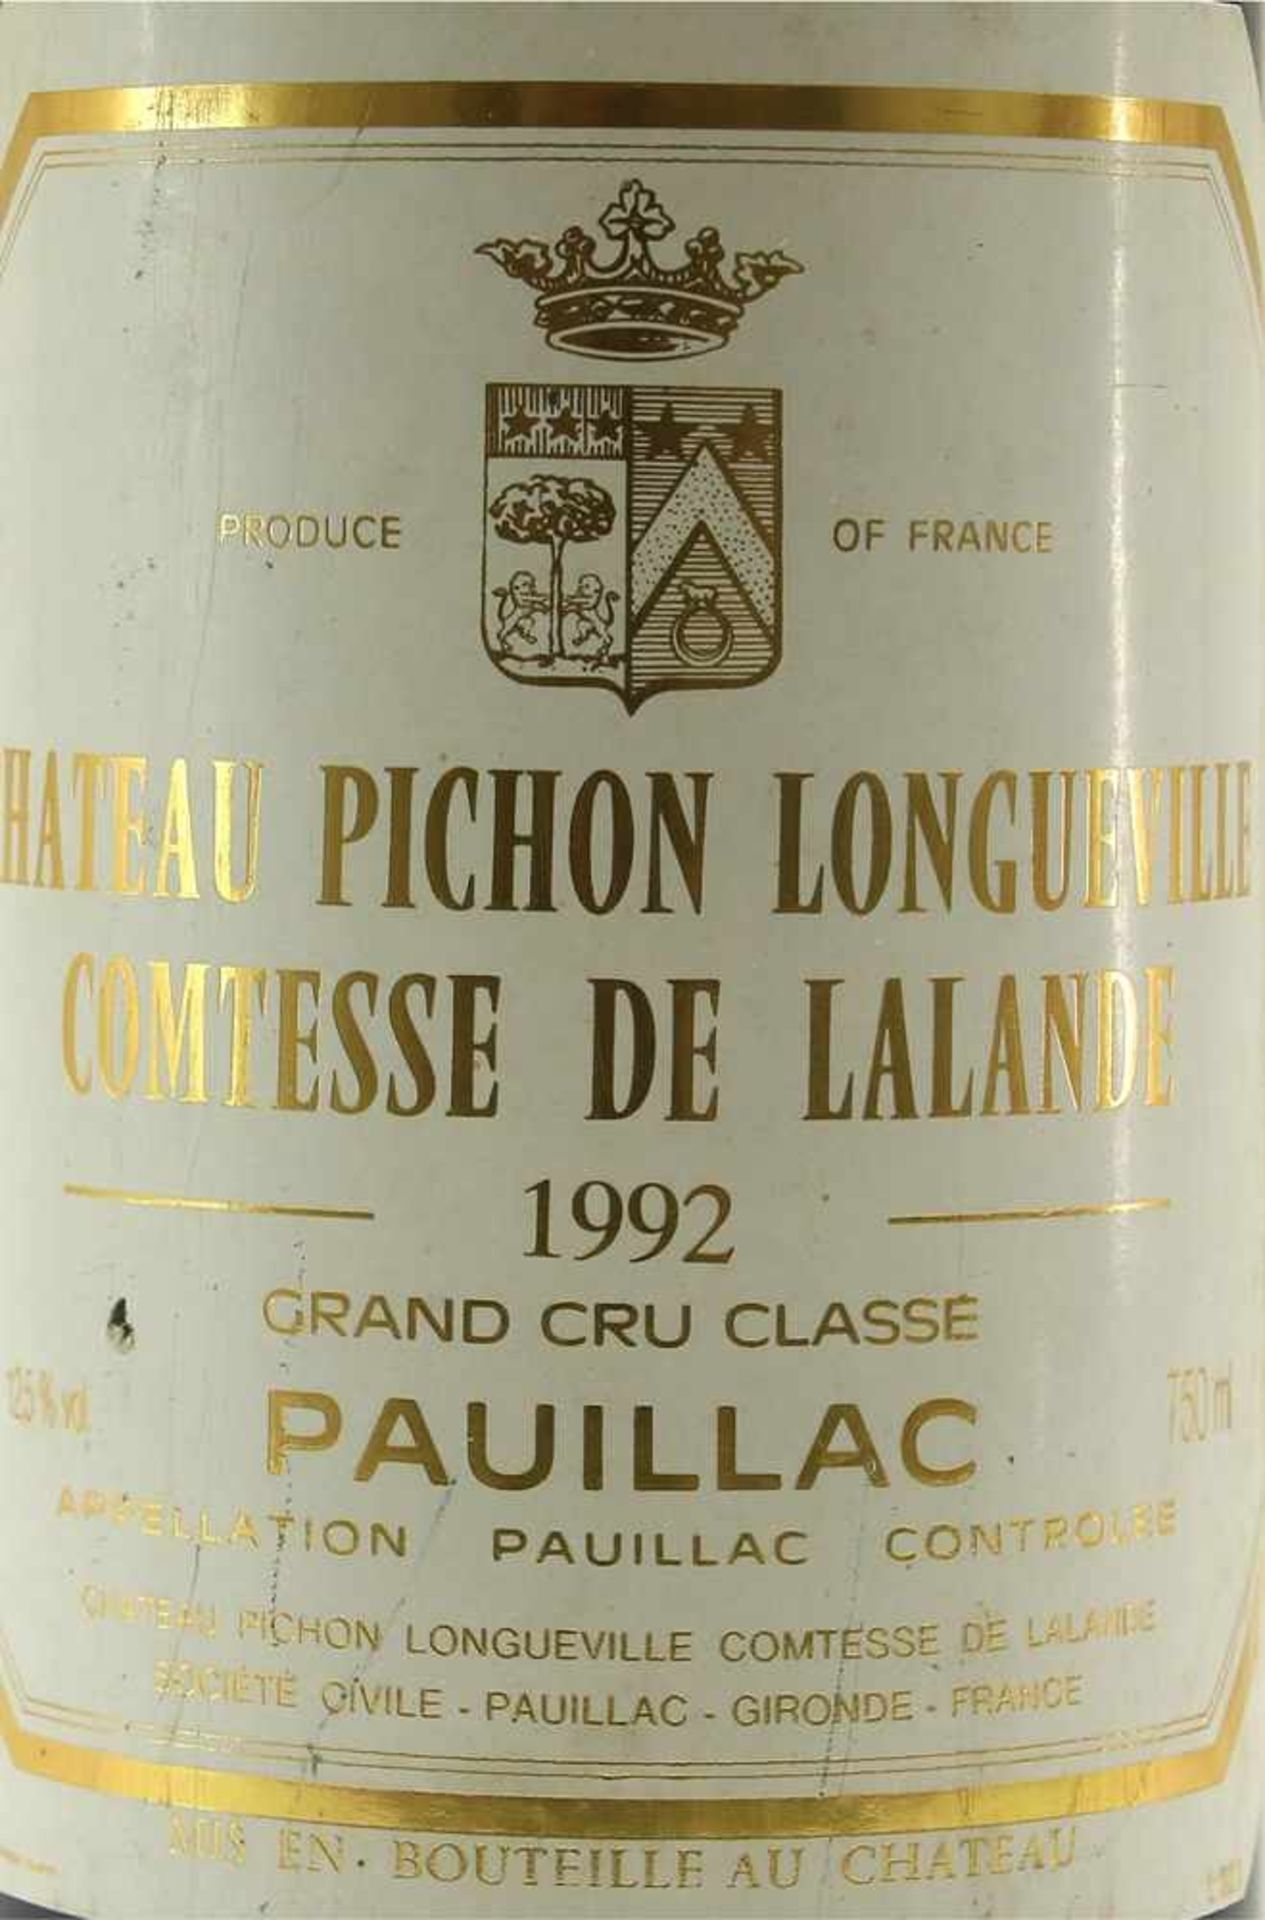 Chateau Pichon Longueville 1992Comtesse de Lalande 1986. Grand Cru Classé. 0,75 Liter Flasche. - Bild 2 aus 4